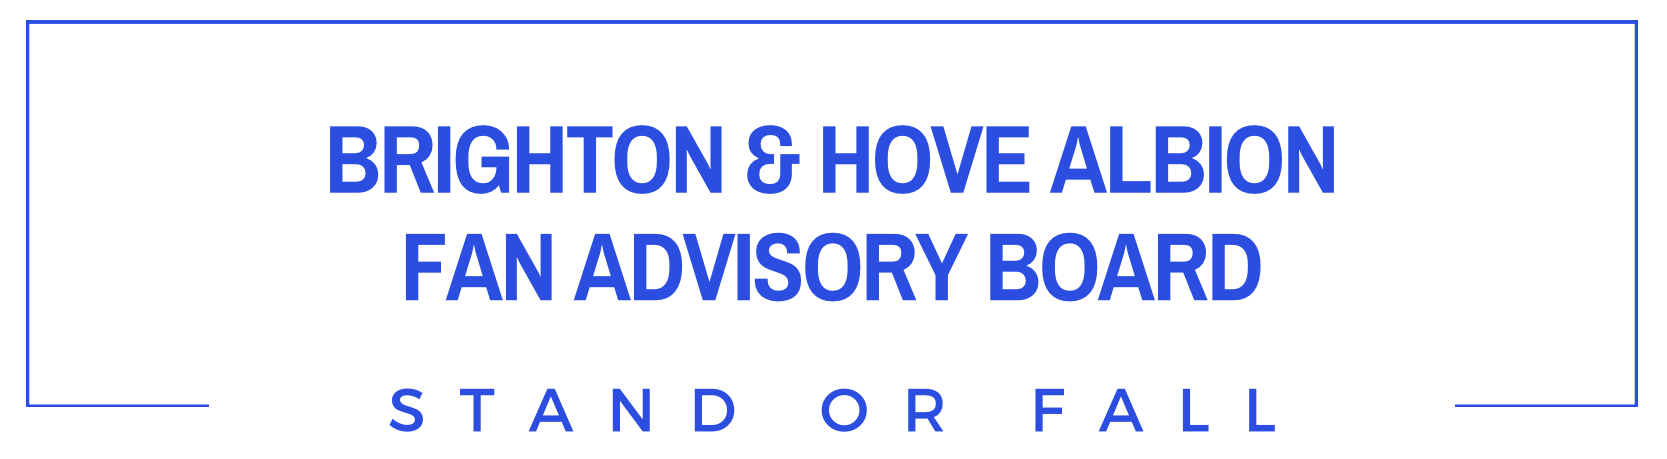 Brighton & Hove Albion Fan Advisory Board